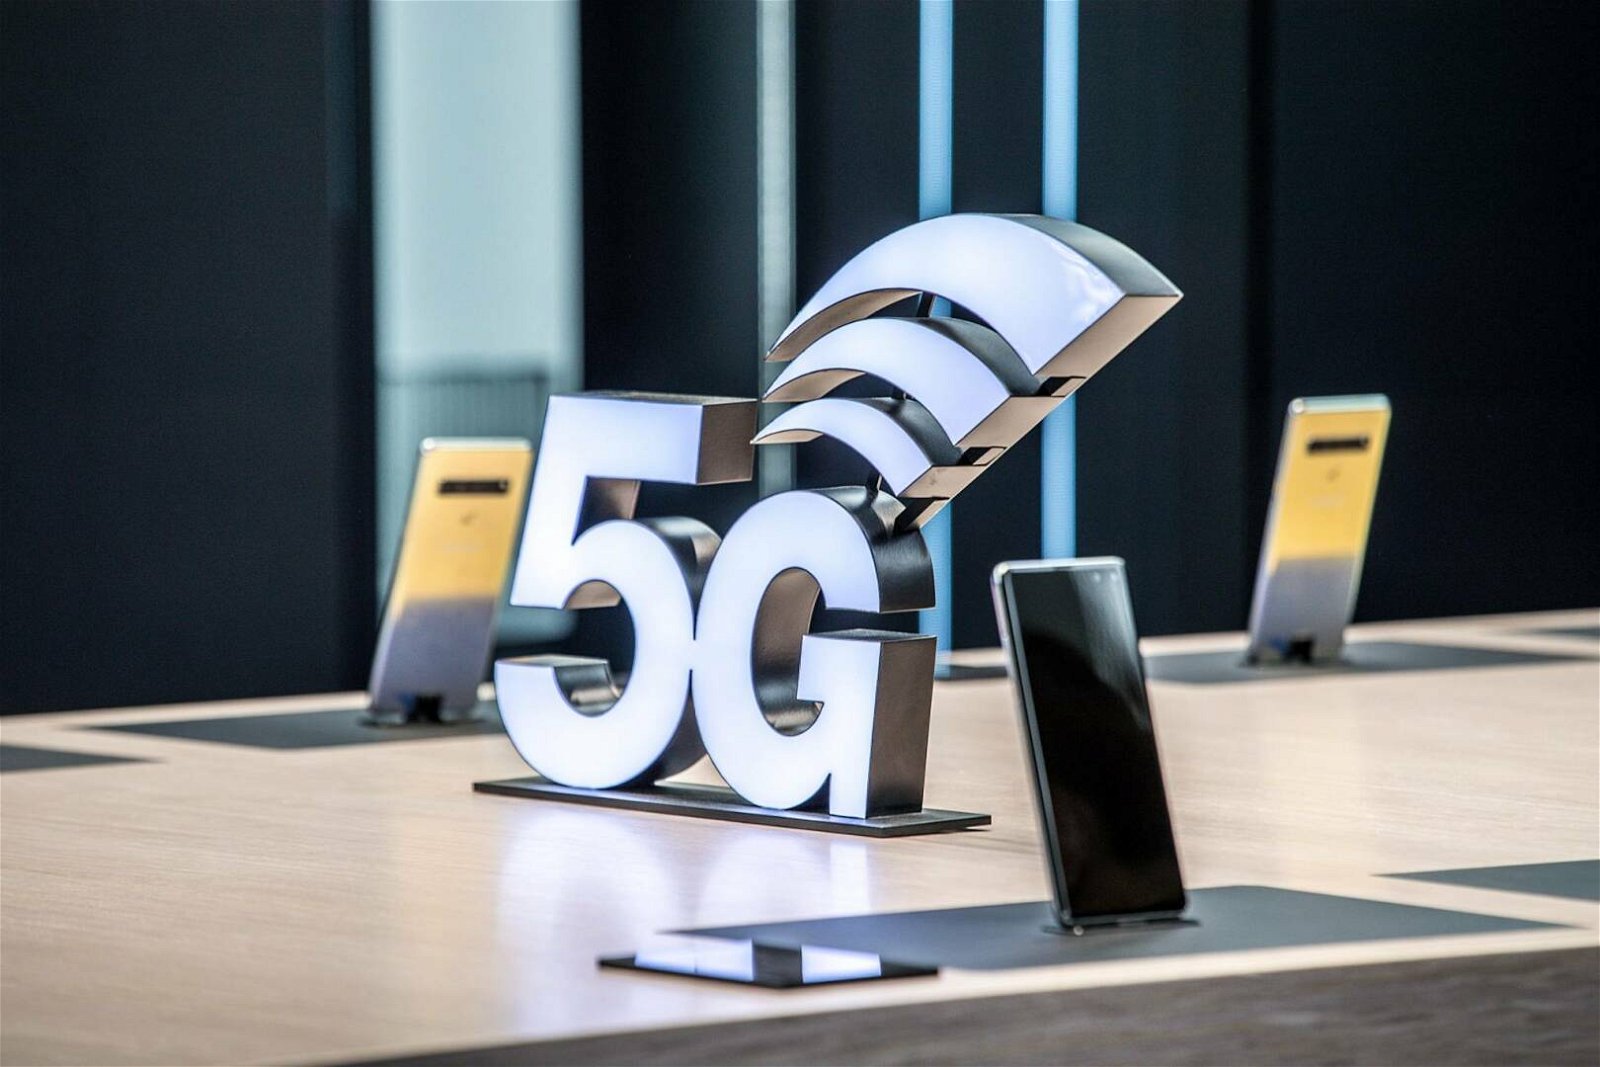 Immagine di 5G: con Huawei assente, Samsung e Verizon chiudono un contratto da 6,6 miliardi